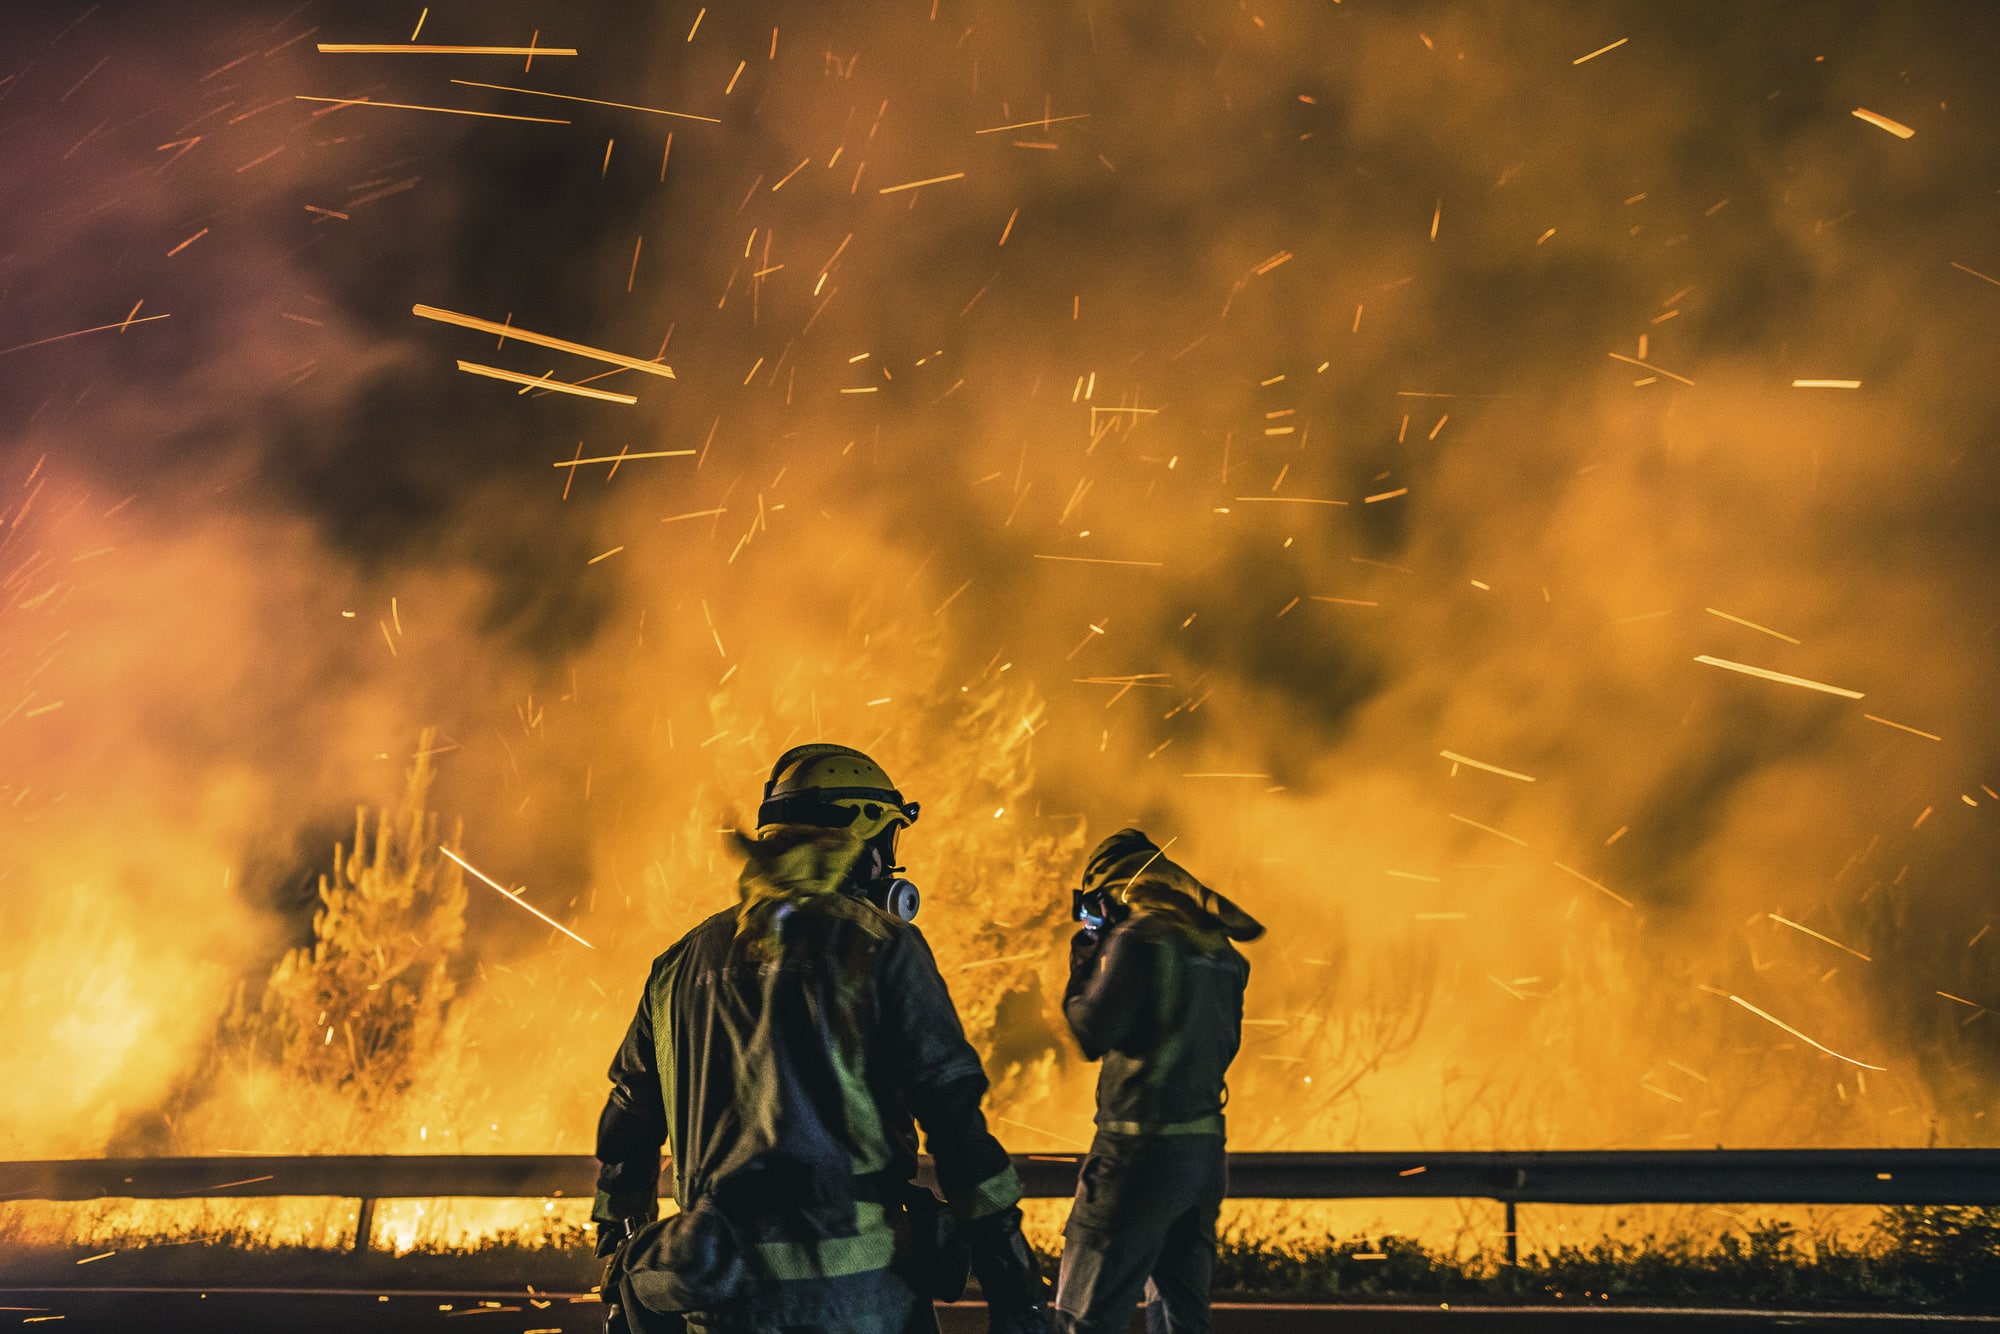 Operarios de las Brigadas de Refuerzo de Incendios Forestales (BRIF) lucha contra las llamas en la madrugada de este sábado para extinguir el incendio declarado en el día anterior en la parroquia de Cures, Boiro, A Coruña